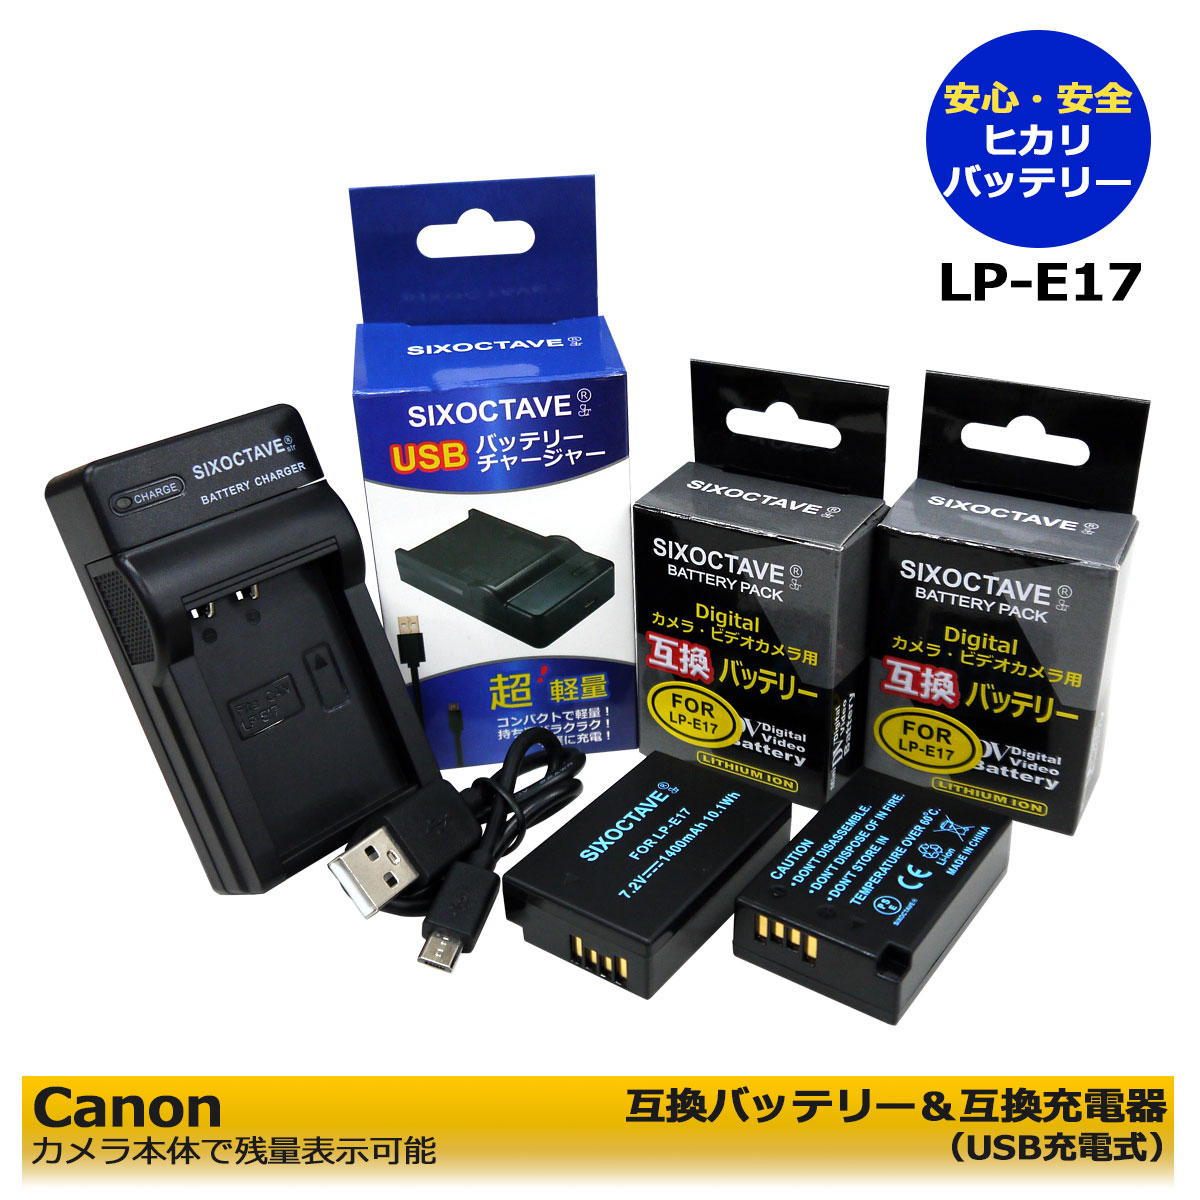 キャノン LP-E17 ≪あす楽対応≫ CANON 互換 交換用電池 2個 と 互換USBチャージャー の3点セット EOS Rebel SL2 / EOS Rebel T7i EOS 750D / EOS 760D / EOS 800D / EOS 8000D / EOS R8 / EOS R50イオス対応可能。EOS Kiss X10i / EOS R100